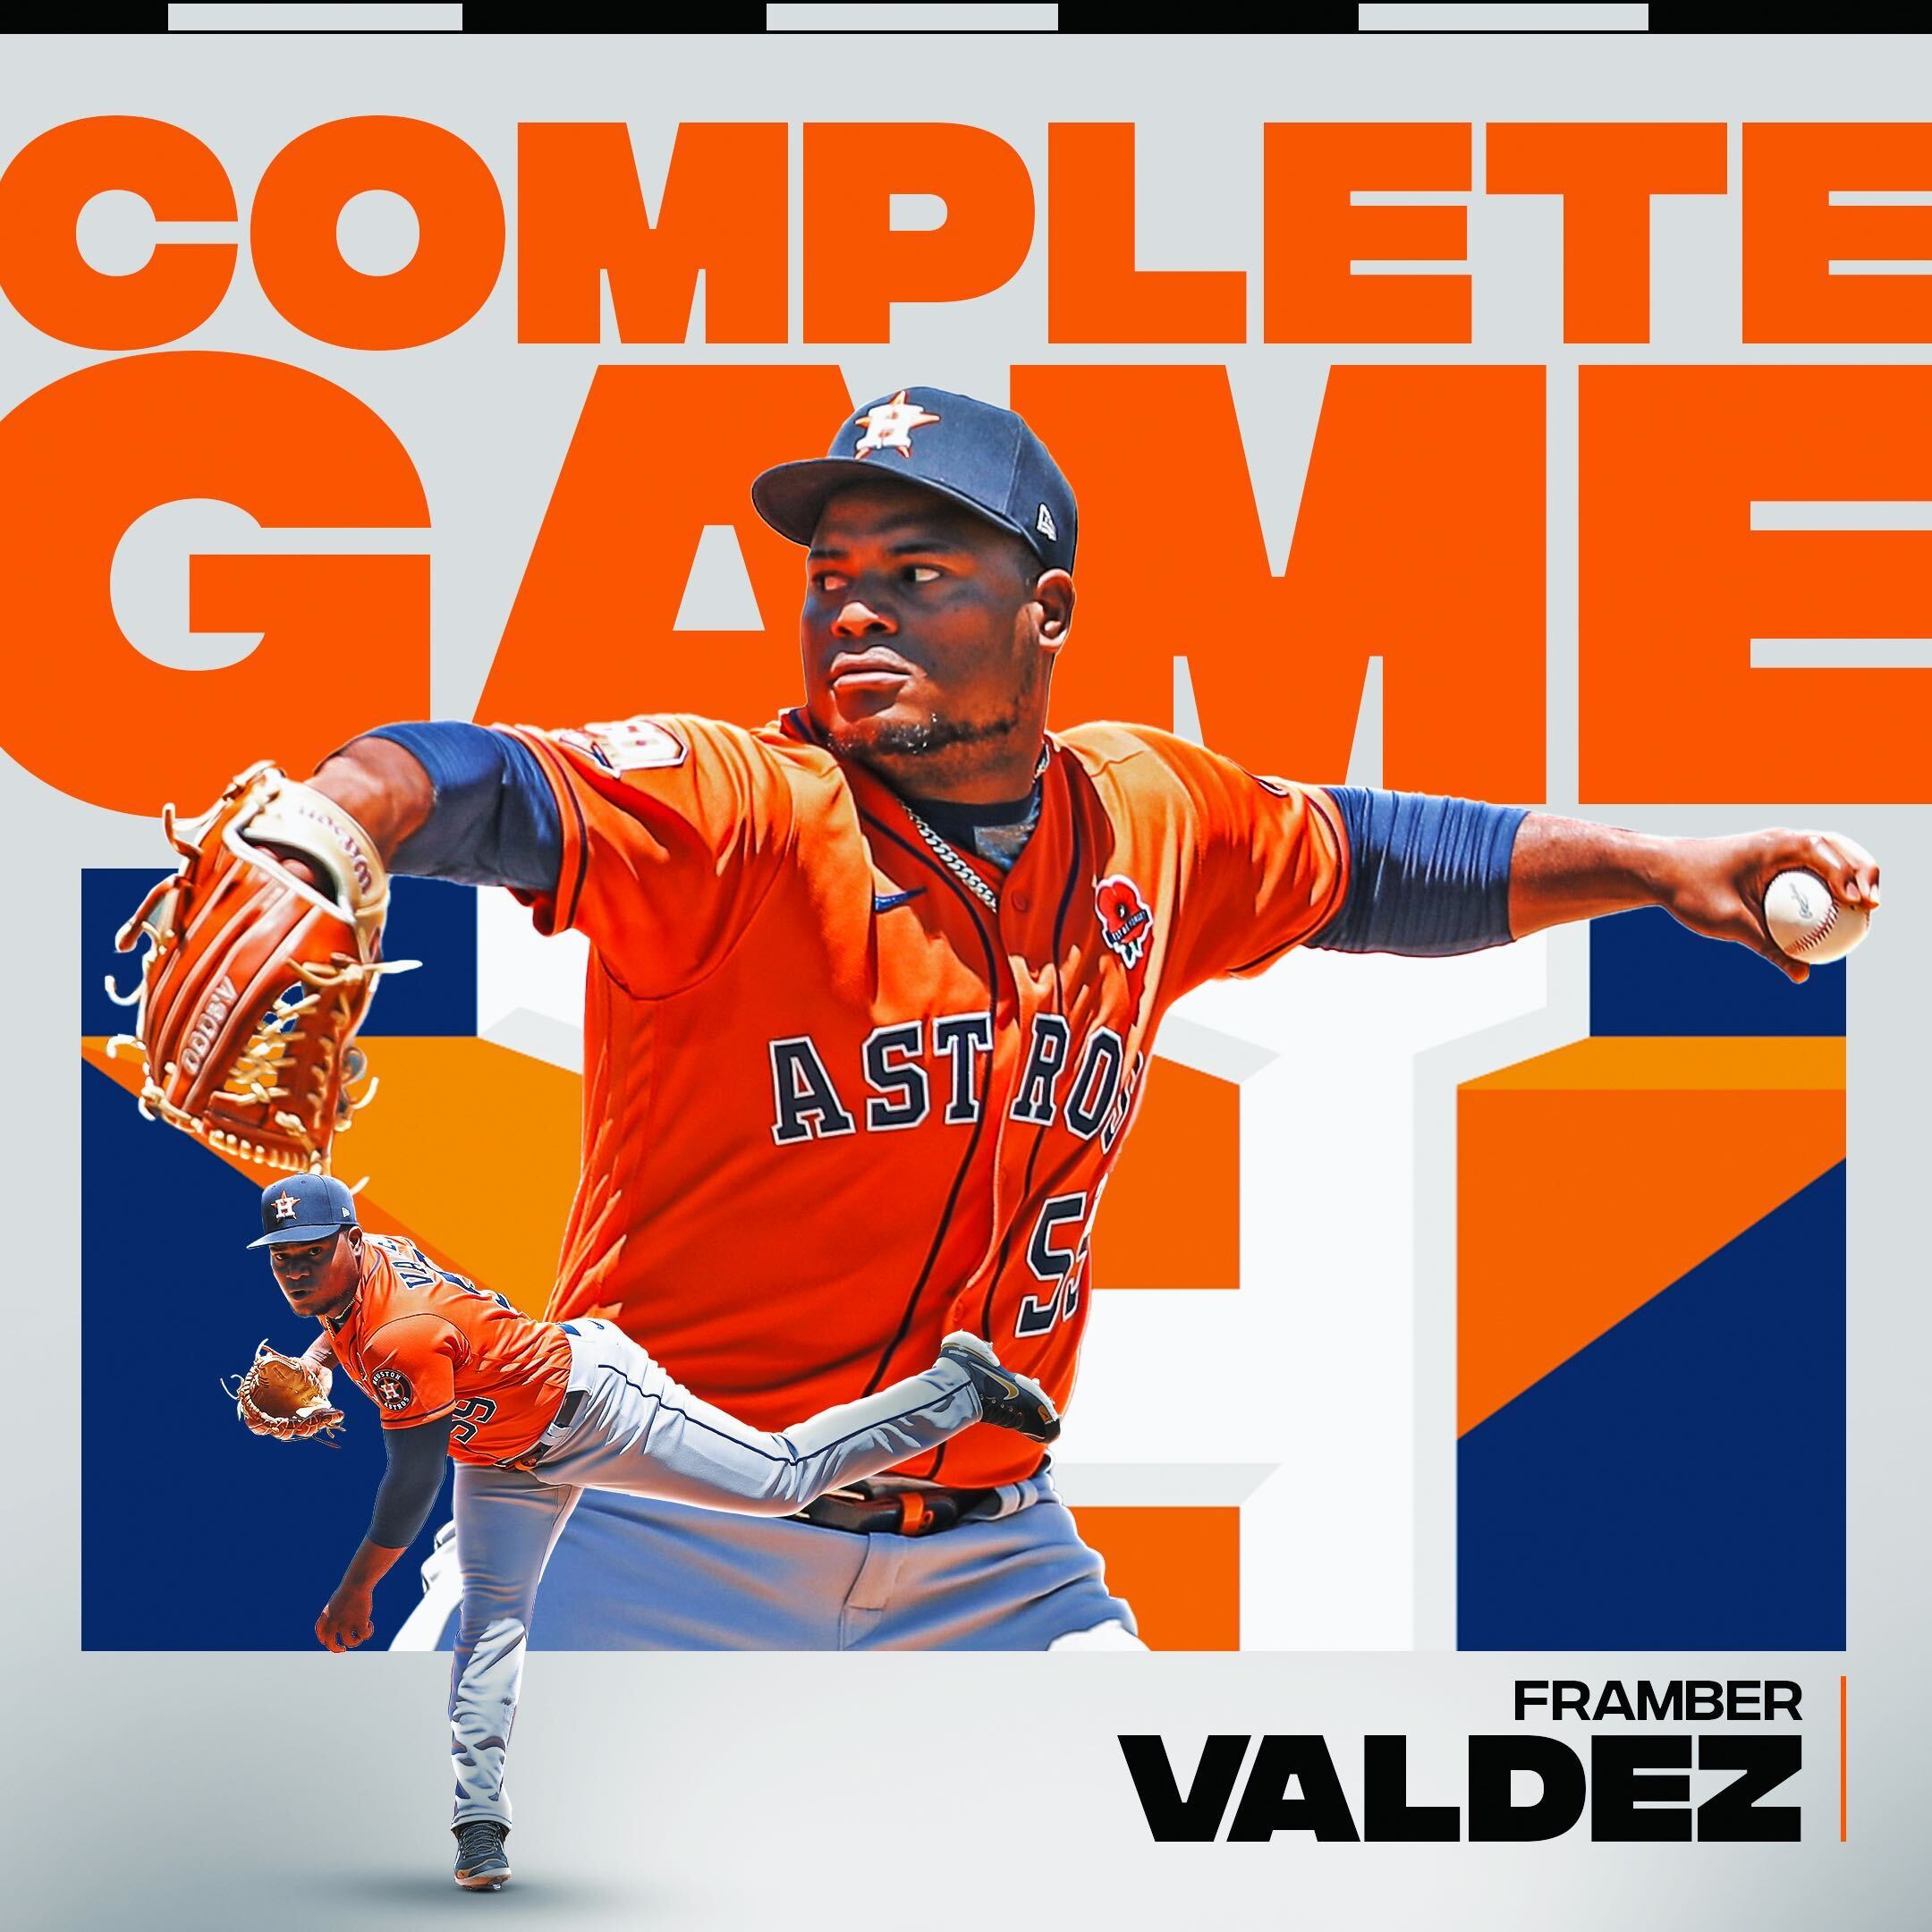 MLB on X: Framber Valdez earned every bit of that W today. https